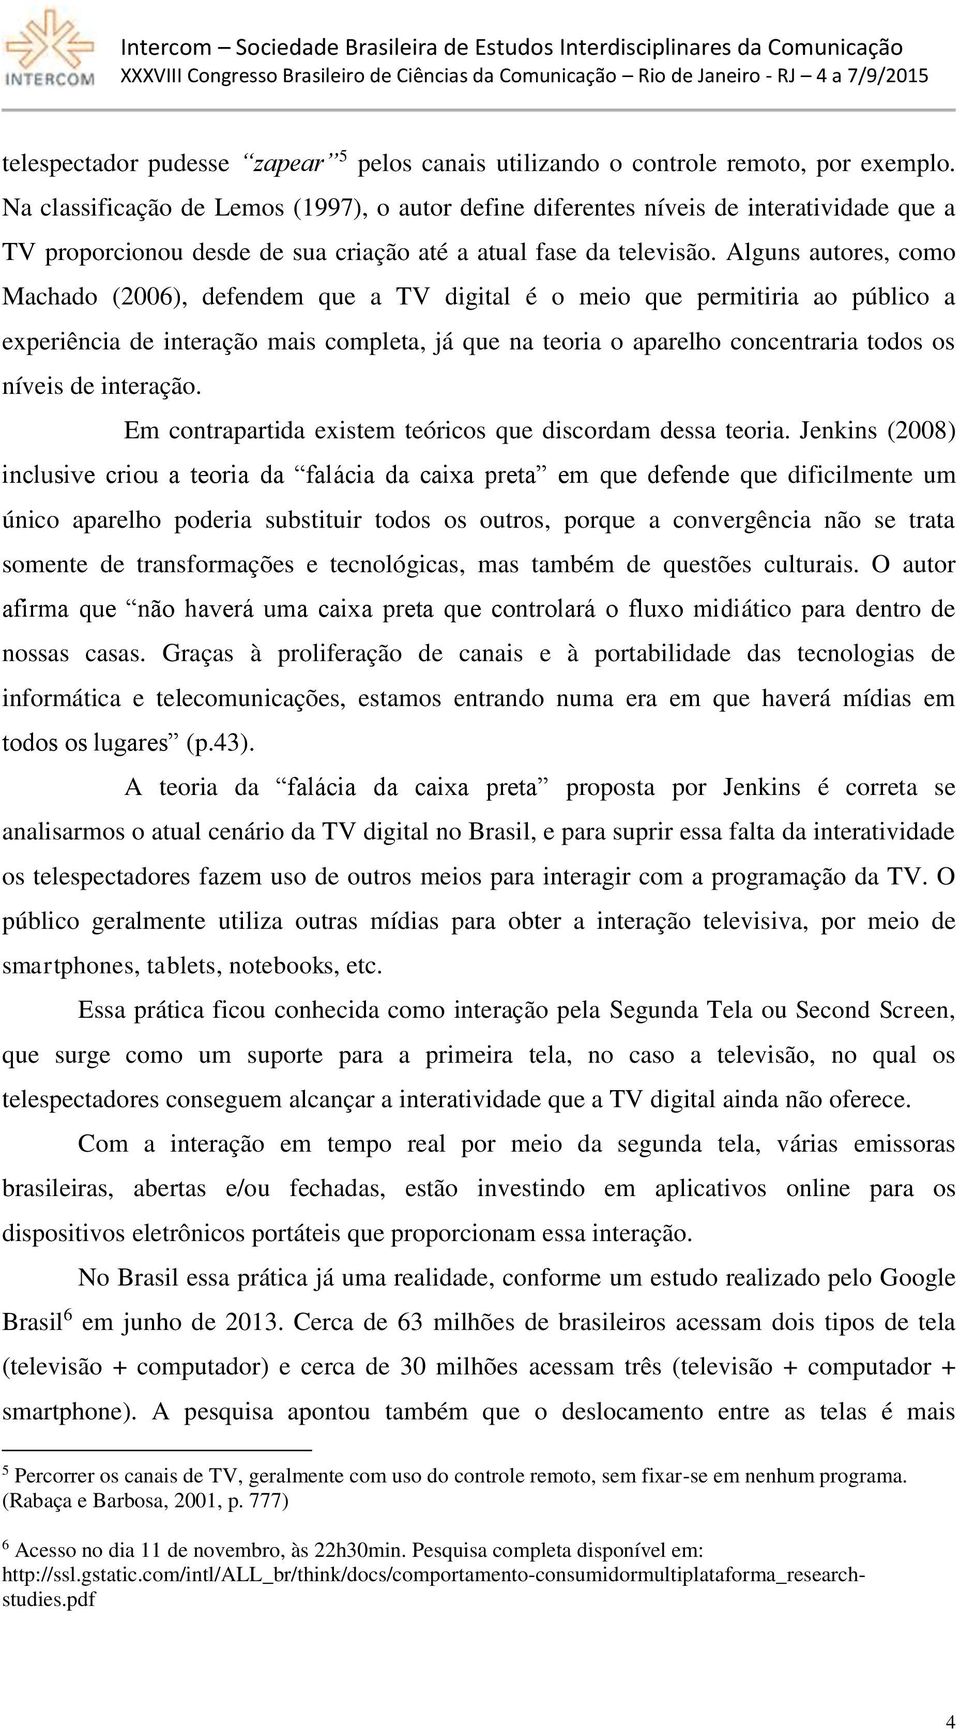 Alguns autores, como Machado (2006), defendem que a TV digital é o meio que permitiria ao público a experiência de interação mais completa, já que na teoria o aparelho concentraria todos os níveis de